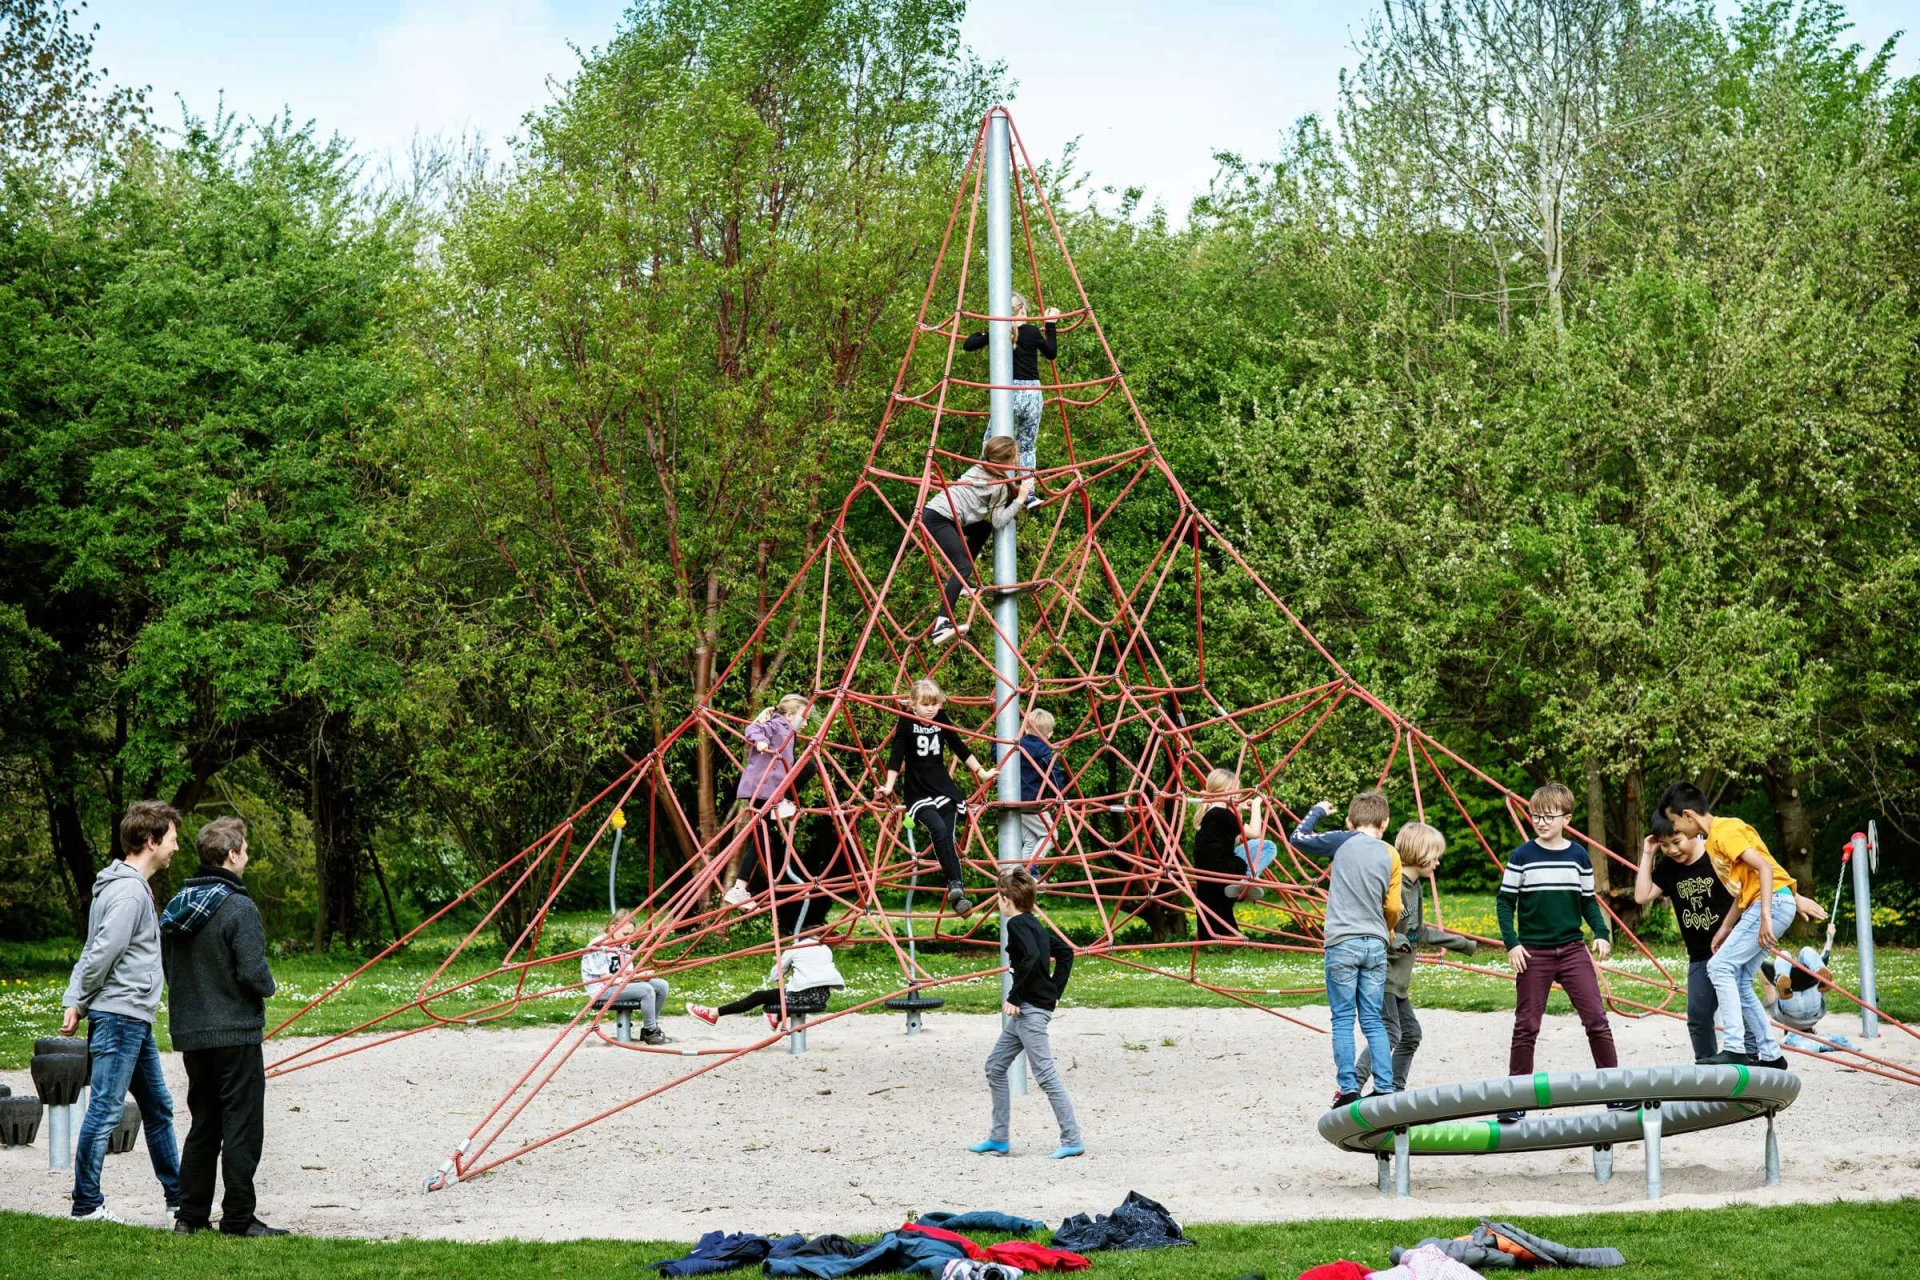 ryhmä ihmisiä leikkii leikkikentällä pyramidin muotoisella kiipeilyrakenteella.